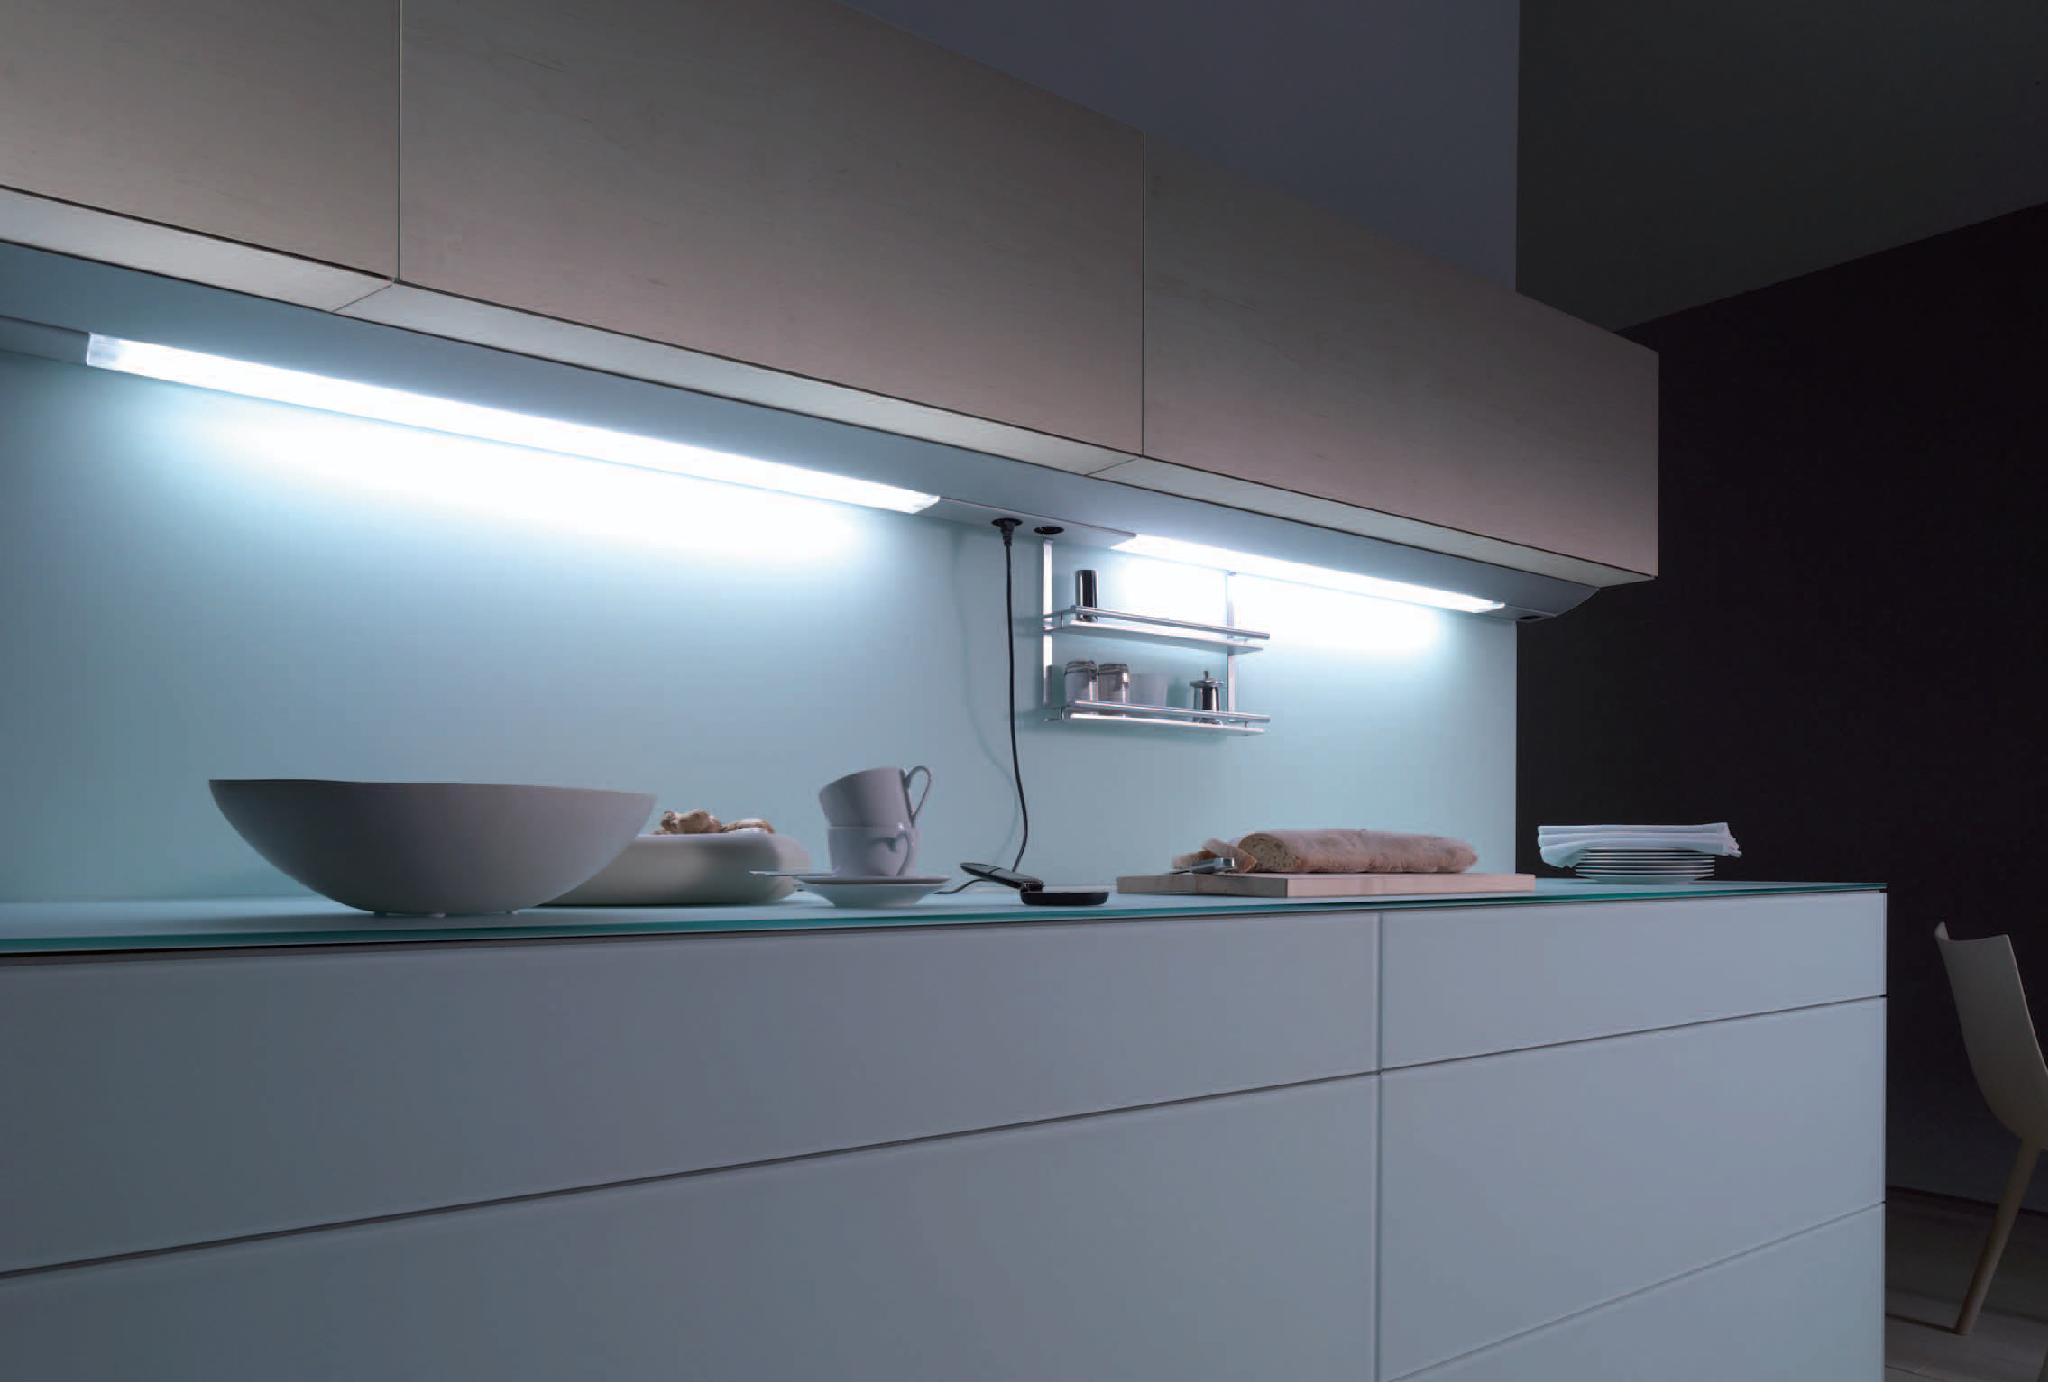 Купить кухонную подсветку. Линейный светильник Obi Kitchen led-144. Подсветка столешницы ikea для кухни под шкафы светодиодная. Светильник для подсветки кухни под шкафом поворотный Luka 79154/08/36. Линейный светильник Obi Kitchen led-54.